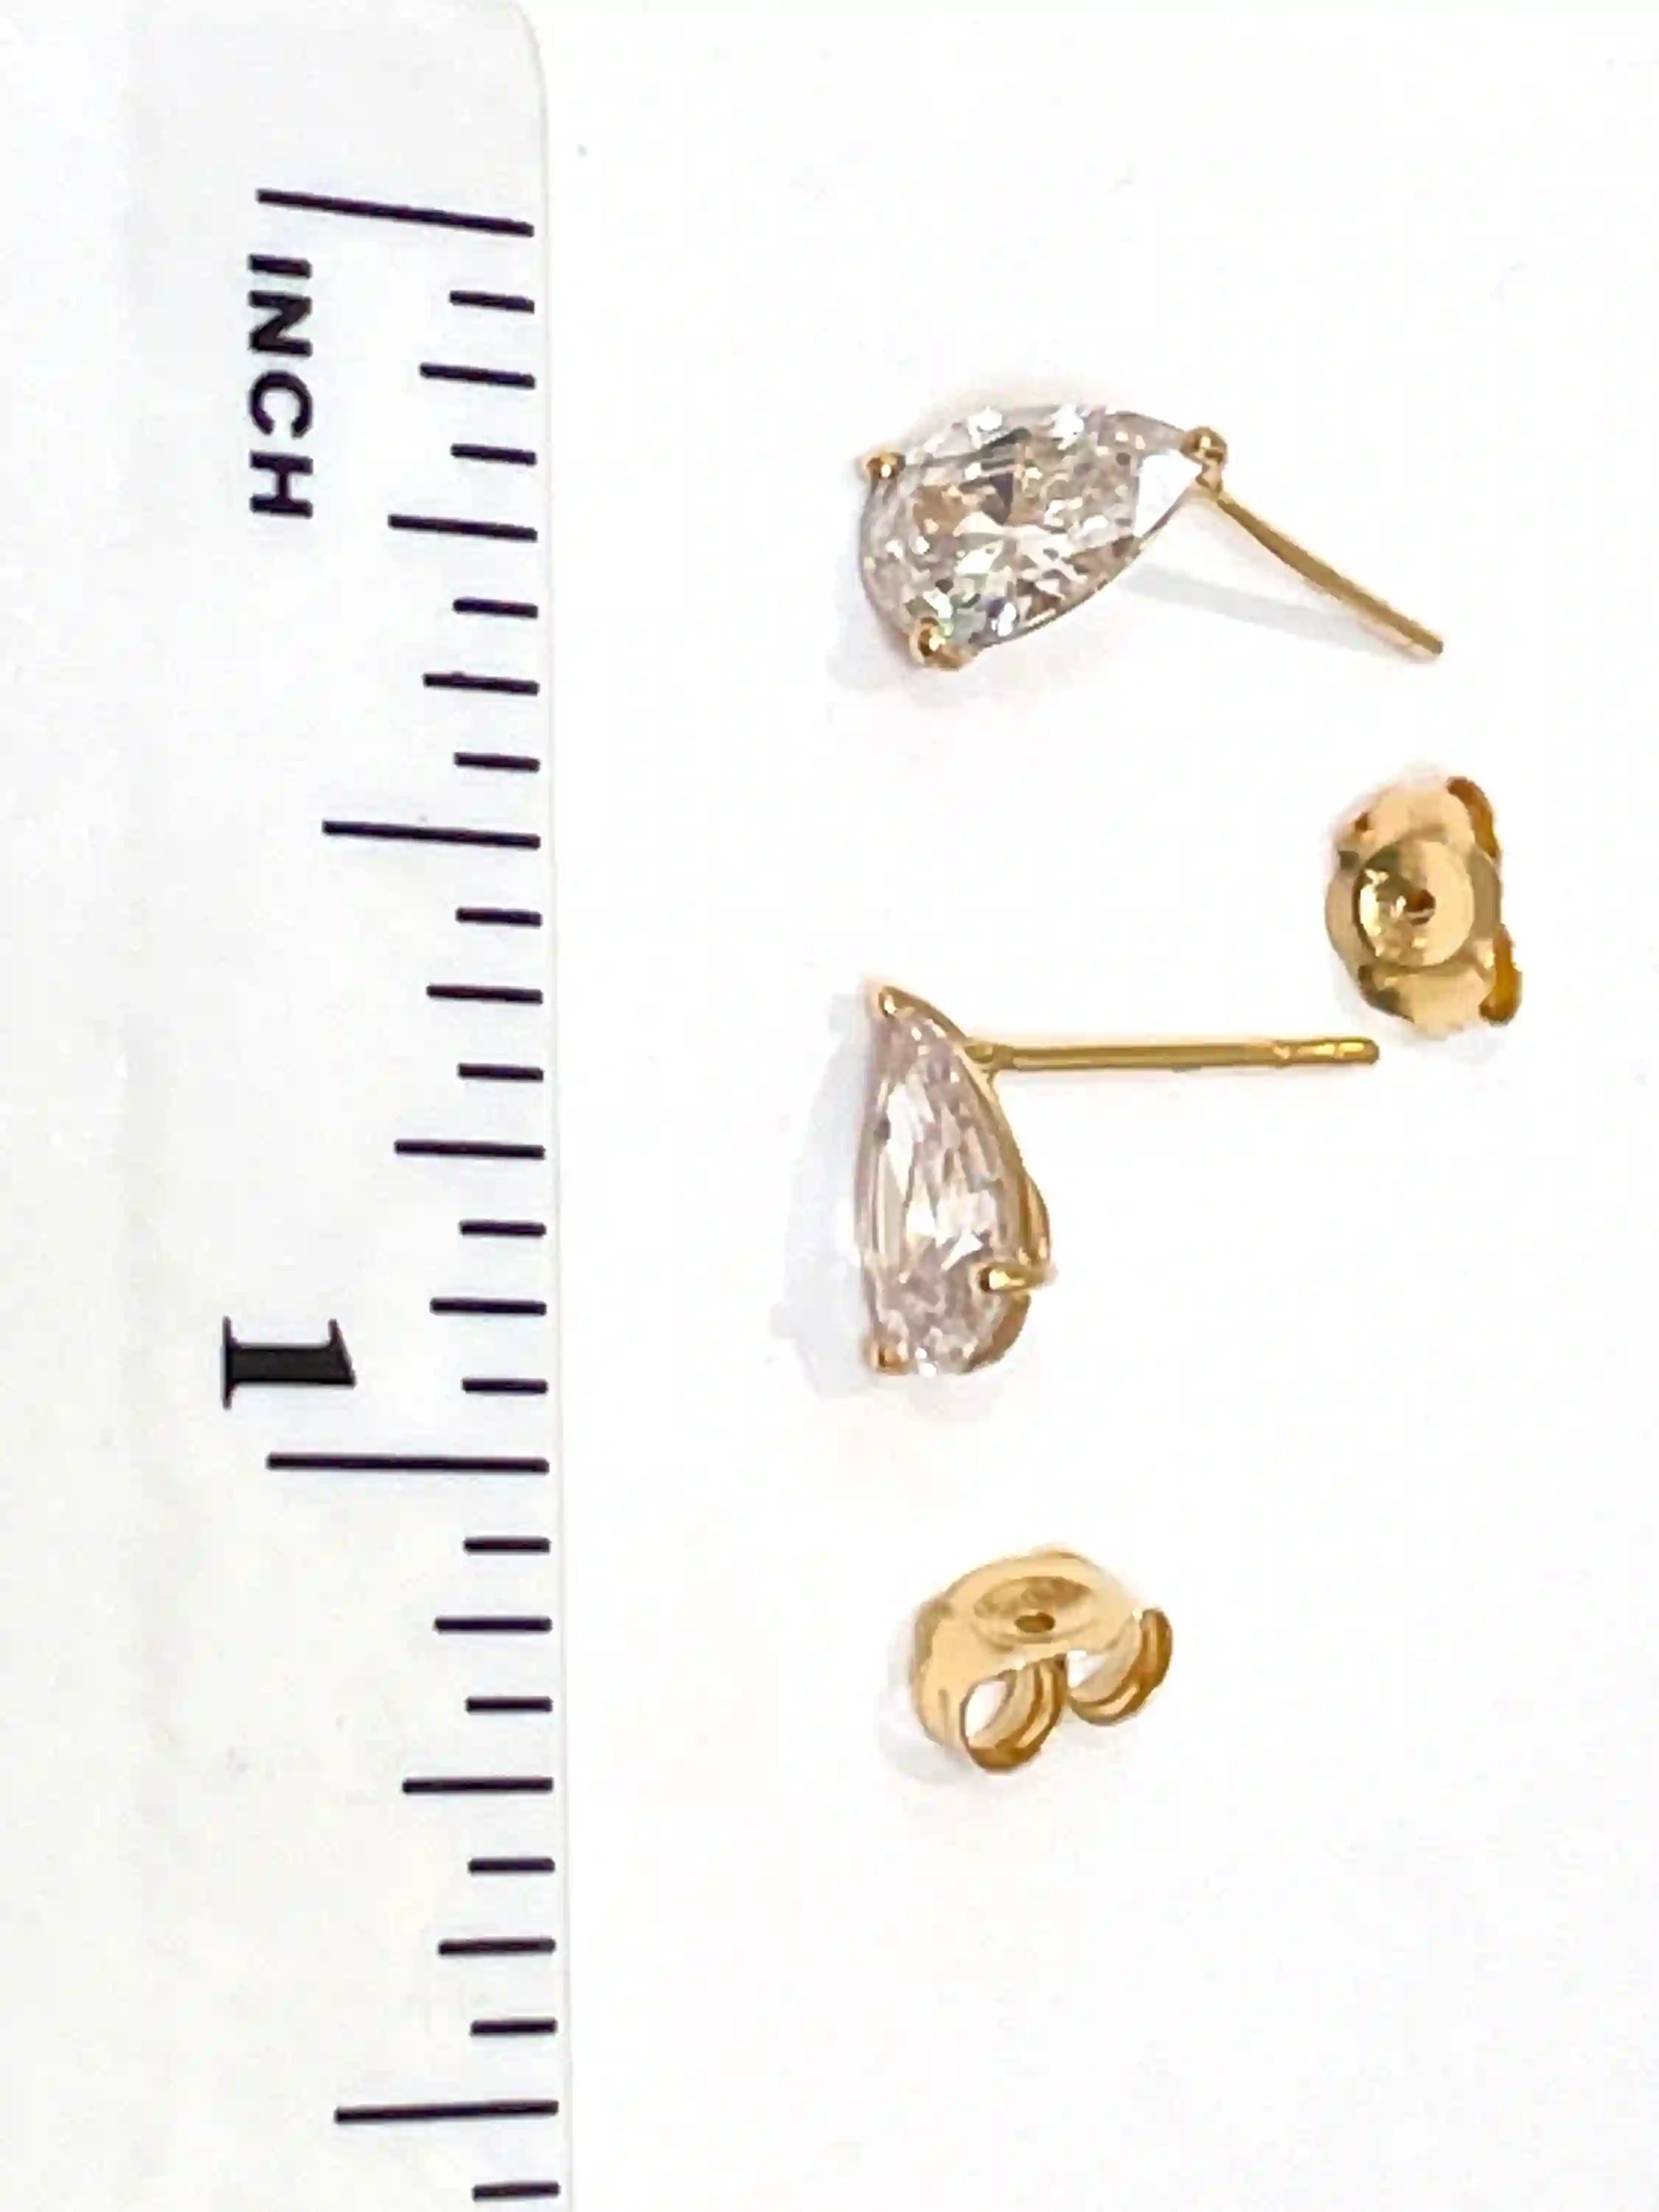 1.5 carat Pear Diamond Earrings SOLID 18k YELLOW Gold Earrings Diamond Jewelry Teardrop Earrings Diamond Stud Earring Fine Jewelry Valentine 